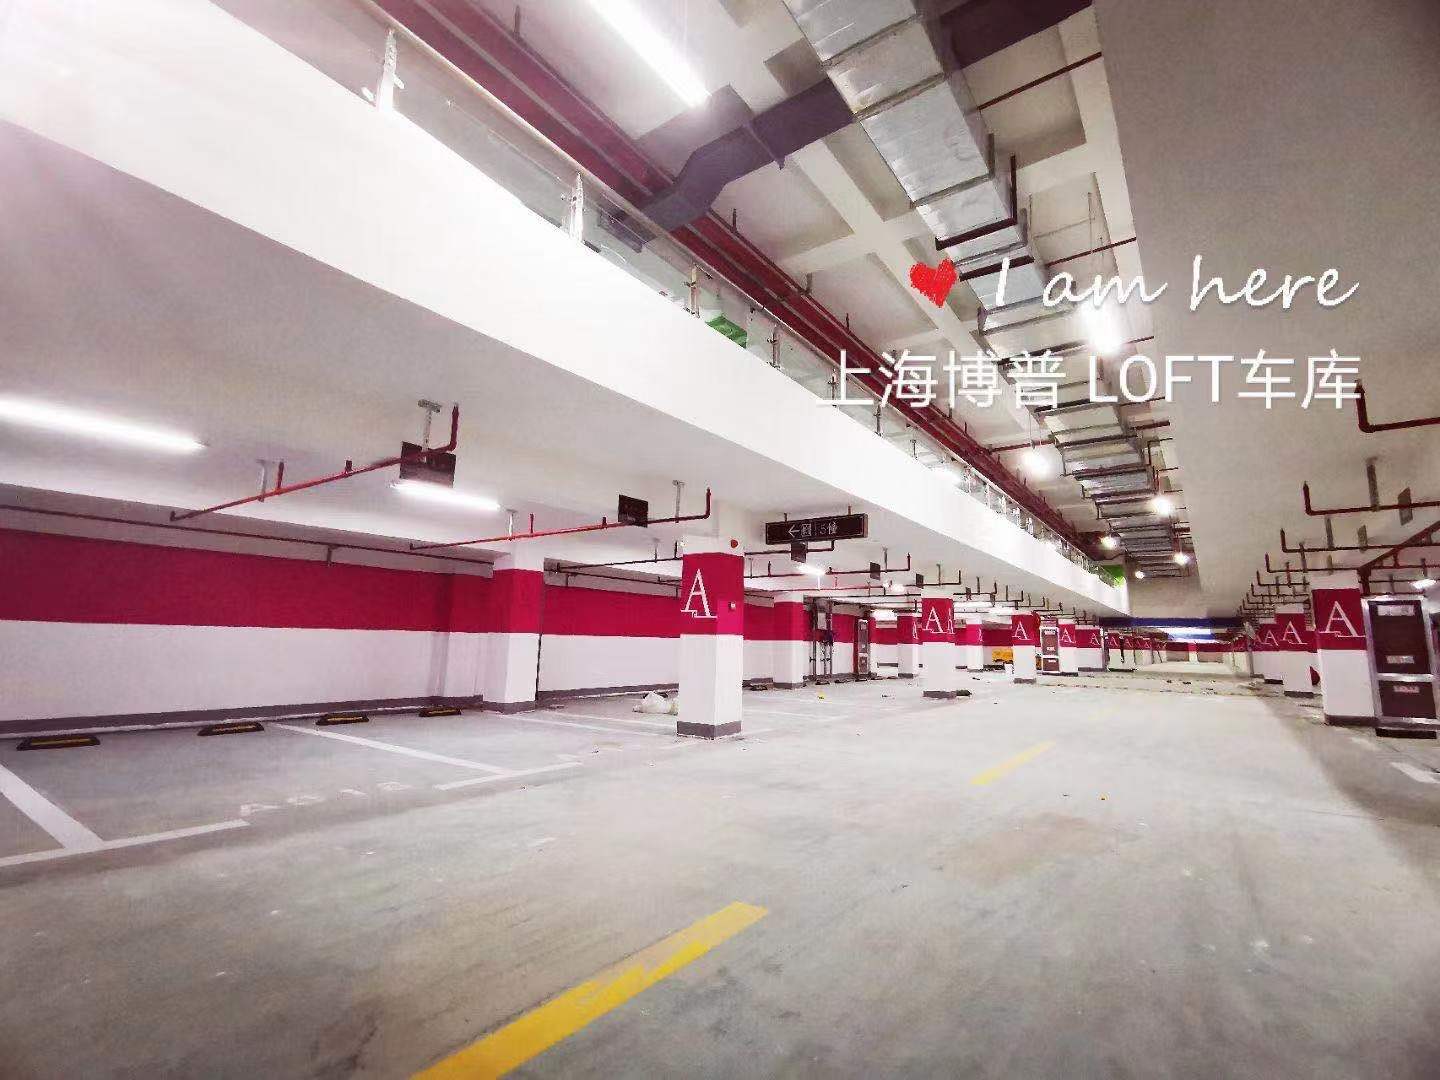 上海LOFT车库“肤白、貌美、大长腿”实锤!